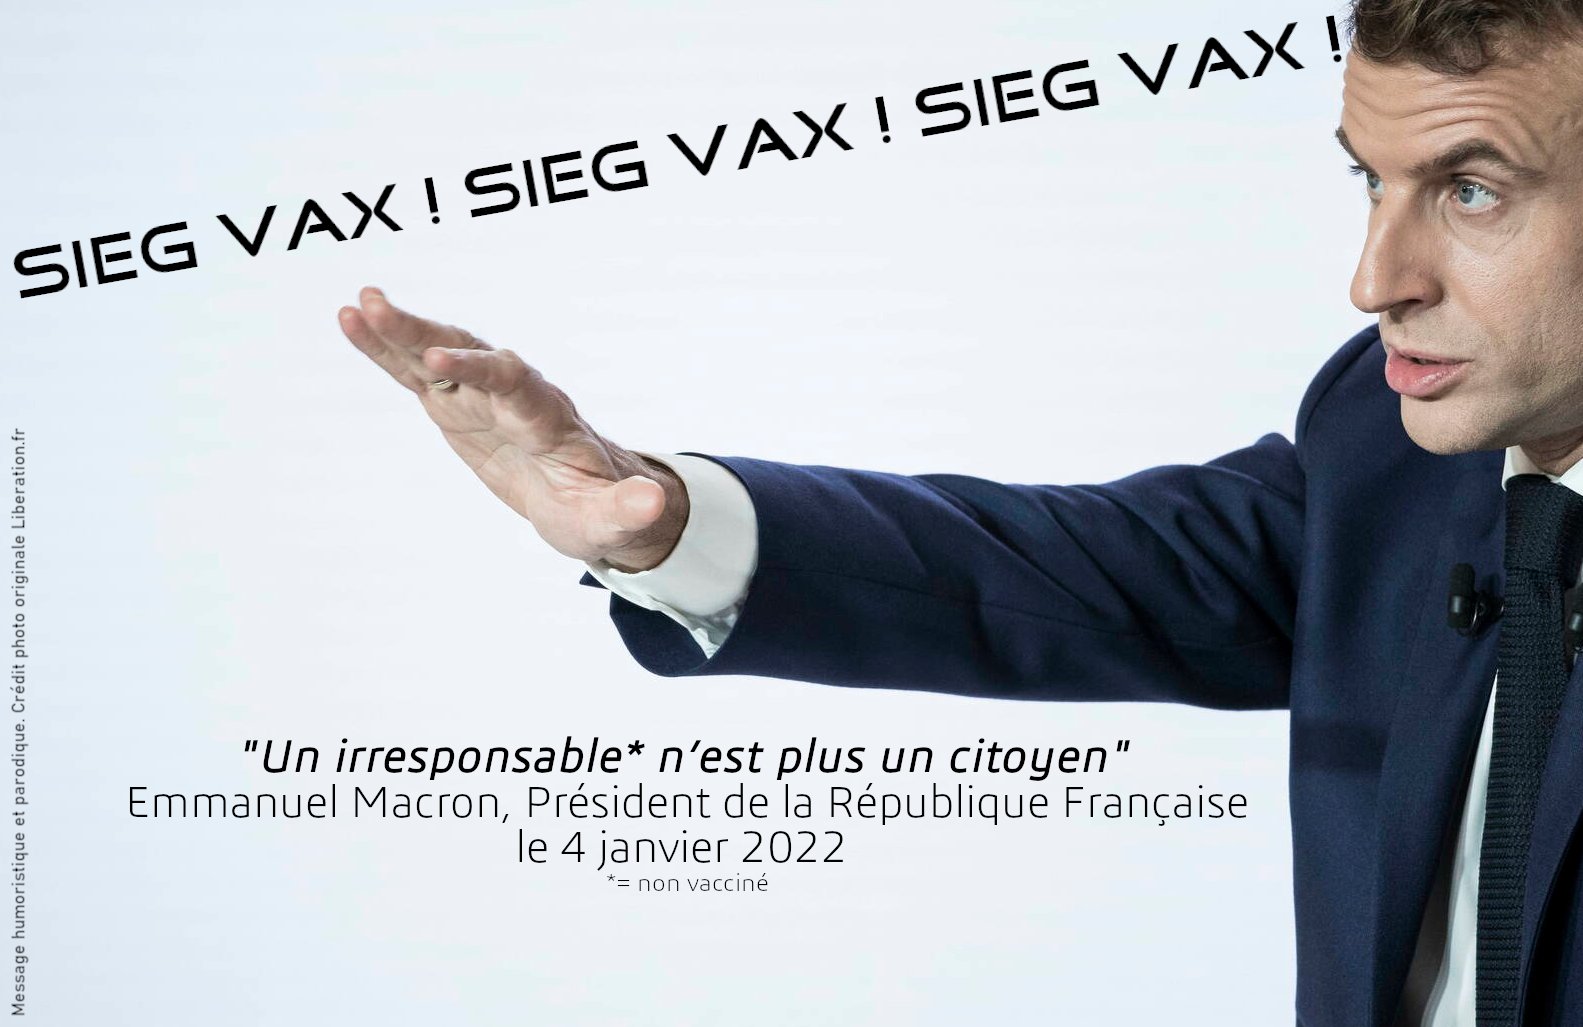 Un irresponsable n’est plus un citoyen Macron en zone rouge SiegVax.jpg